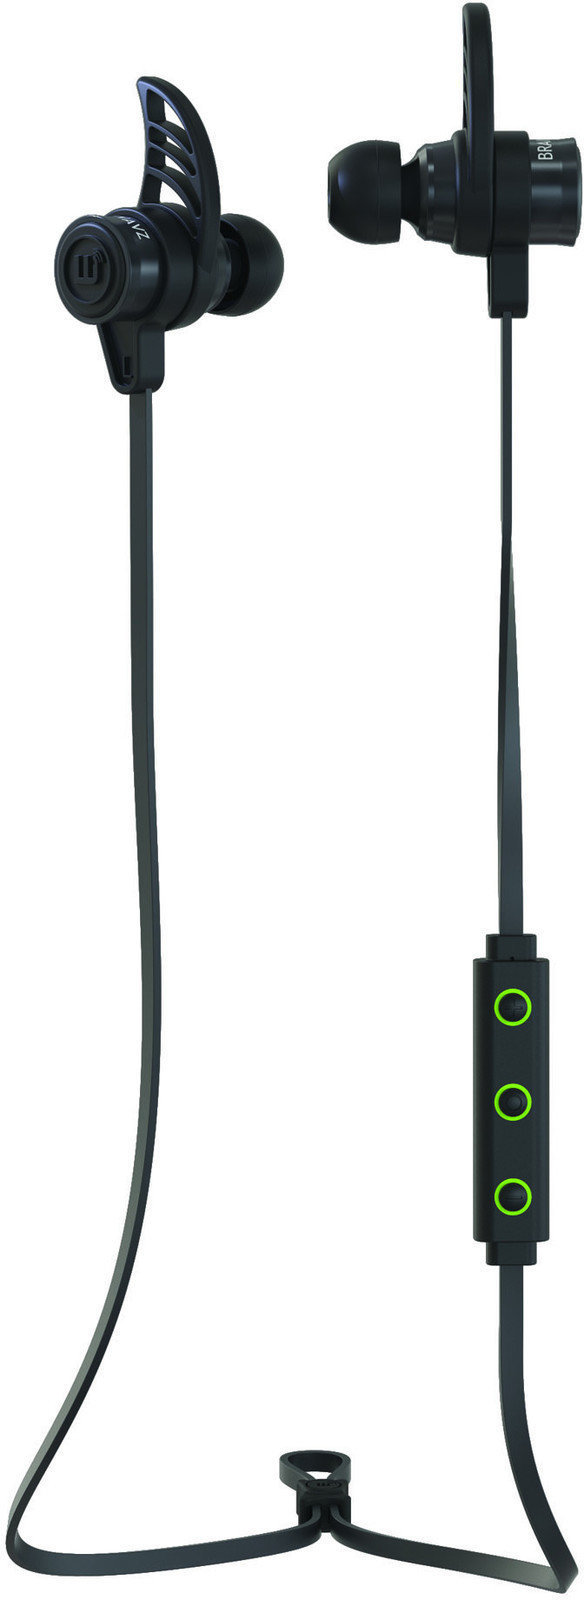 Wireless In-ear headphones Brainwavz BLU-200 Bluetooth 4.0 aptX In-Ear Earphones Black